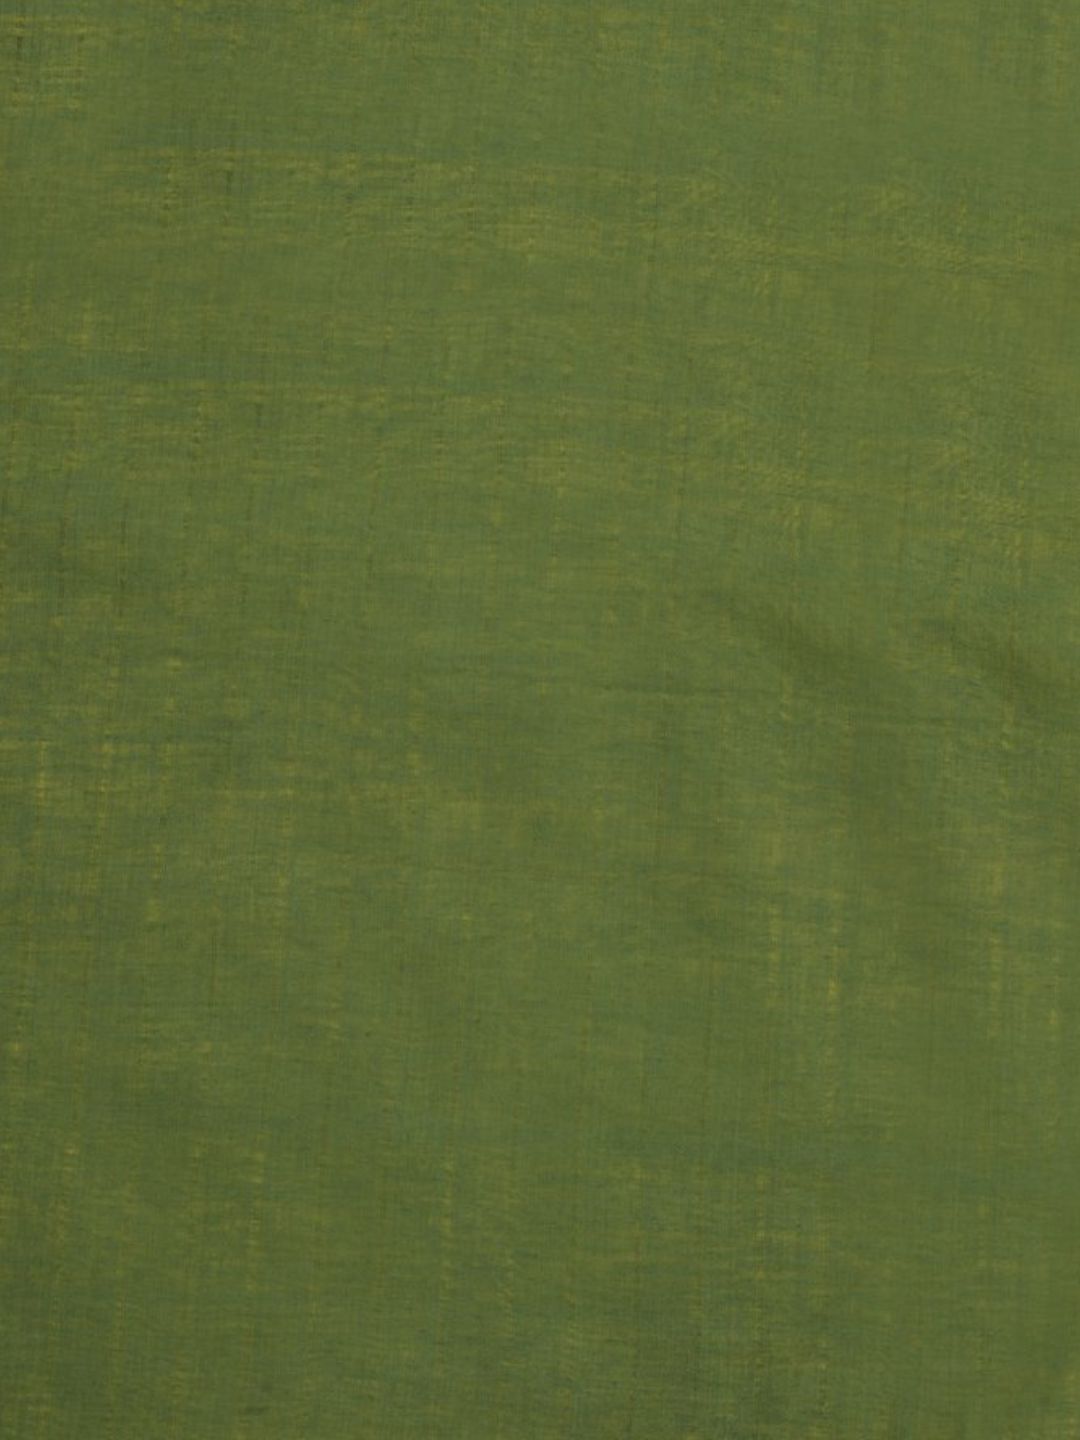 Green Yellow Shibori Silk Cotton  Saree